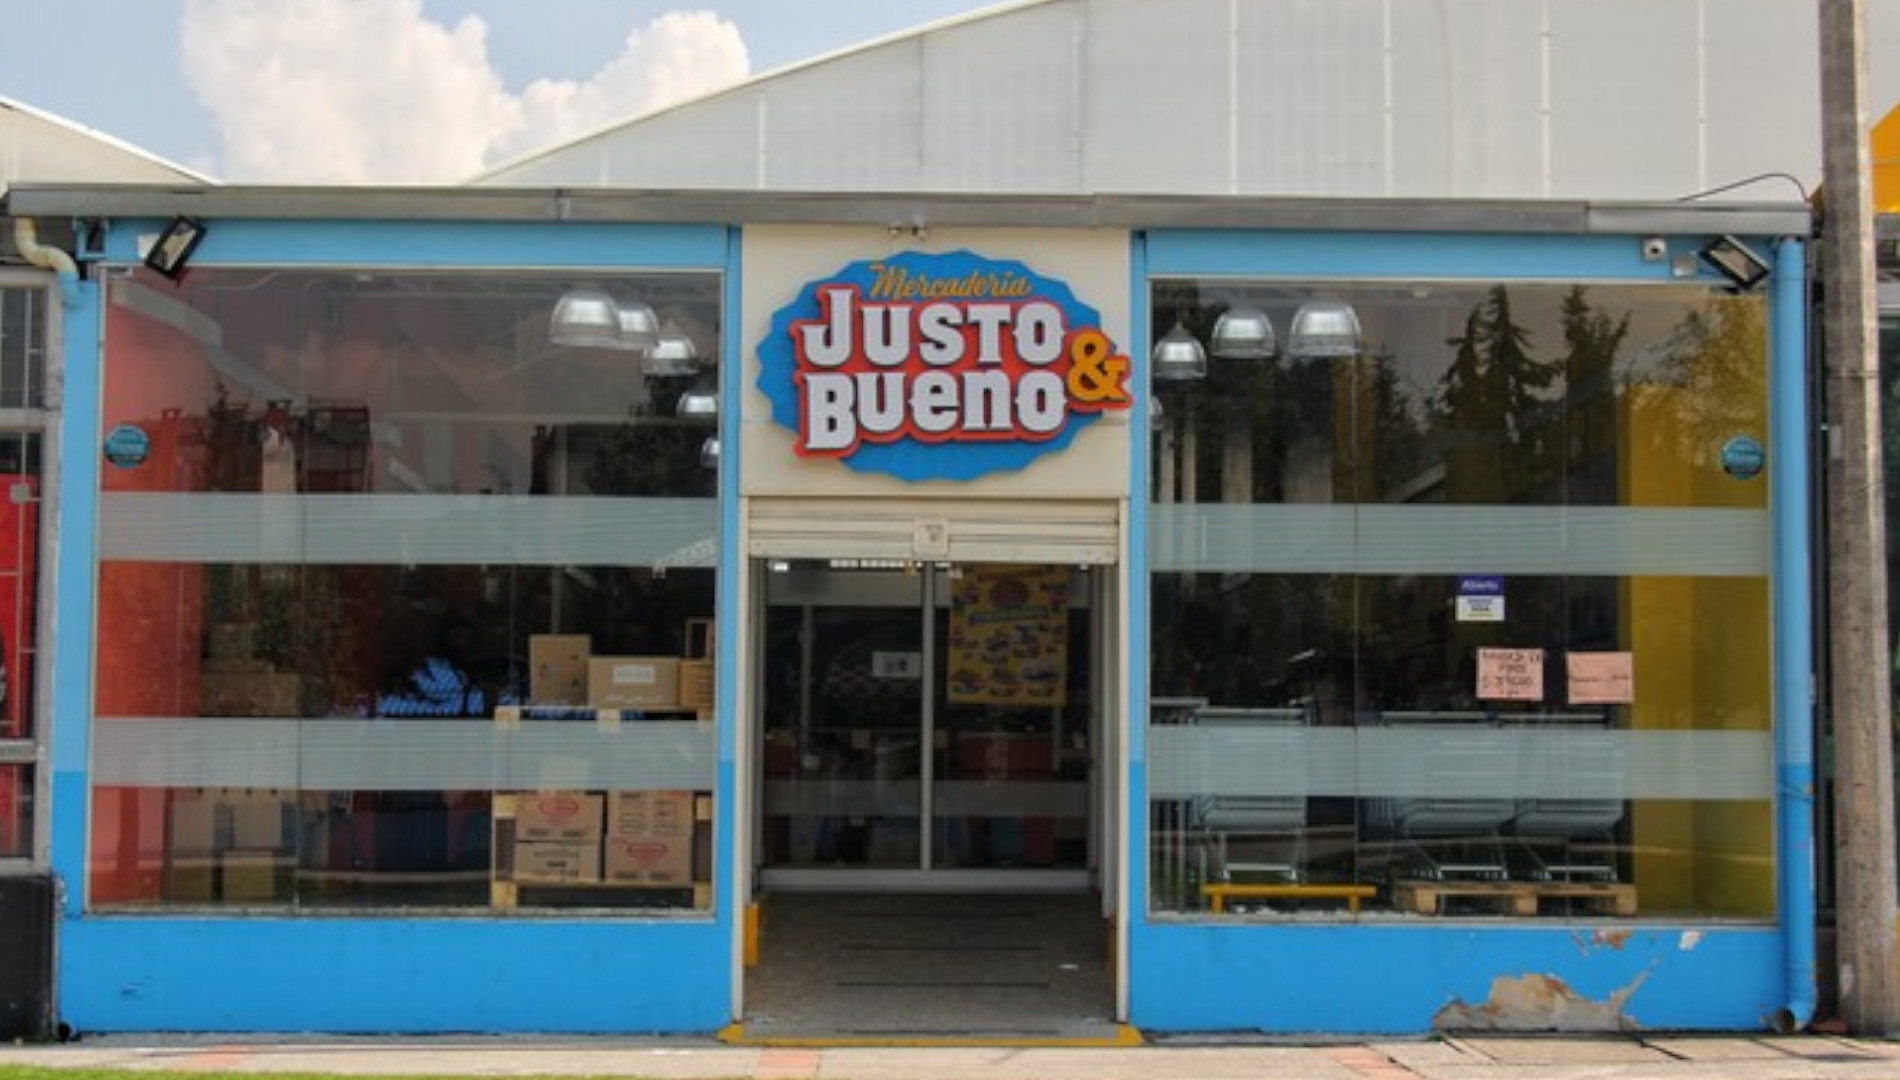 Justo & Bueno cerró sus tiendas porque no entraron los recursos para su salvamento económico   